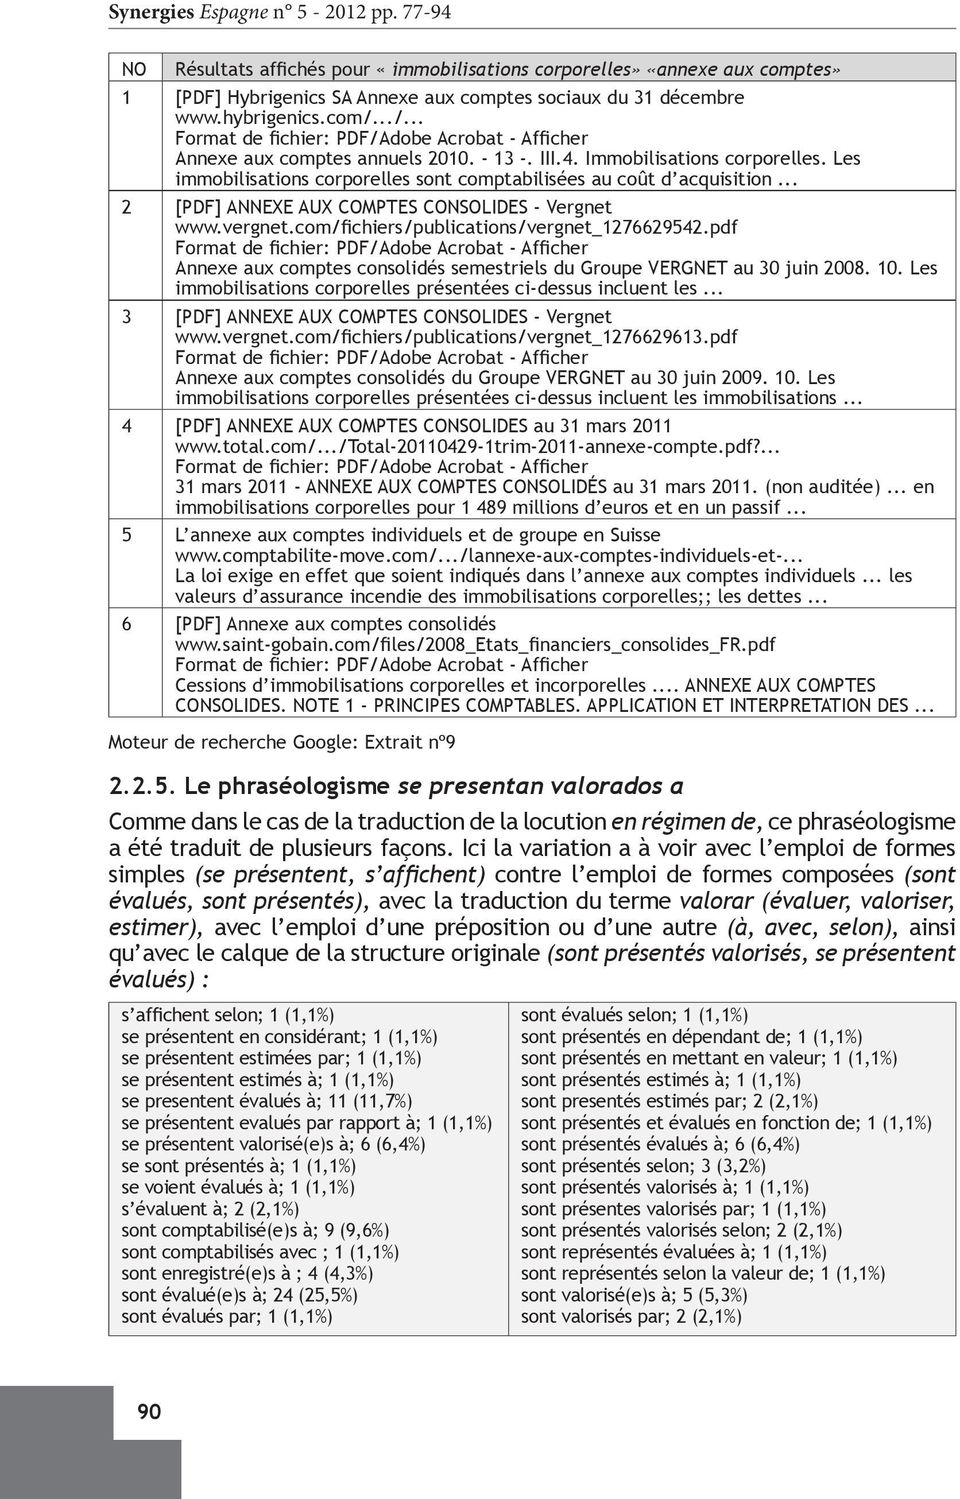 .. 2 [PDF] ANNEXE AUX COMPTES CONSOLIDES - Vergnet www.vergnet.com/fichiers/publications/vergnet_1276629542.pdf Annexe aux comptes consolidés semestriels du Groupe VERGNET au 30 juin 2008. 10.